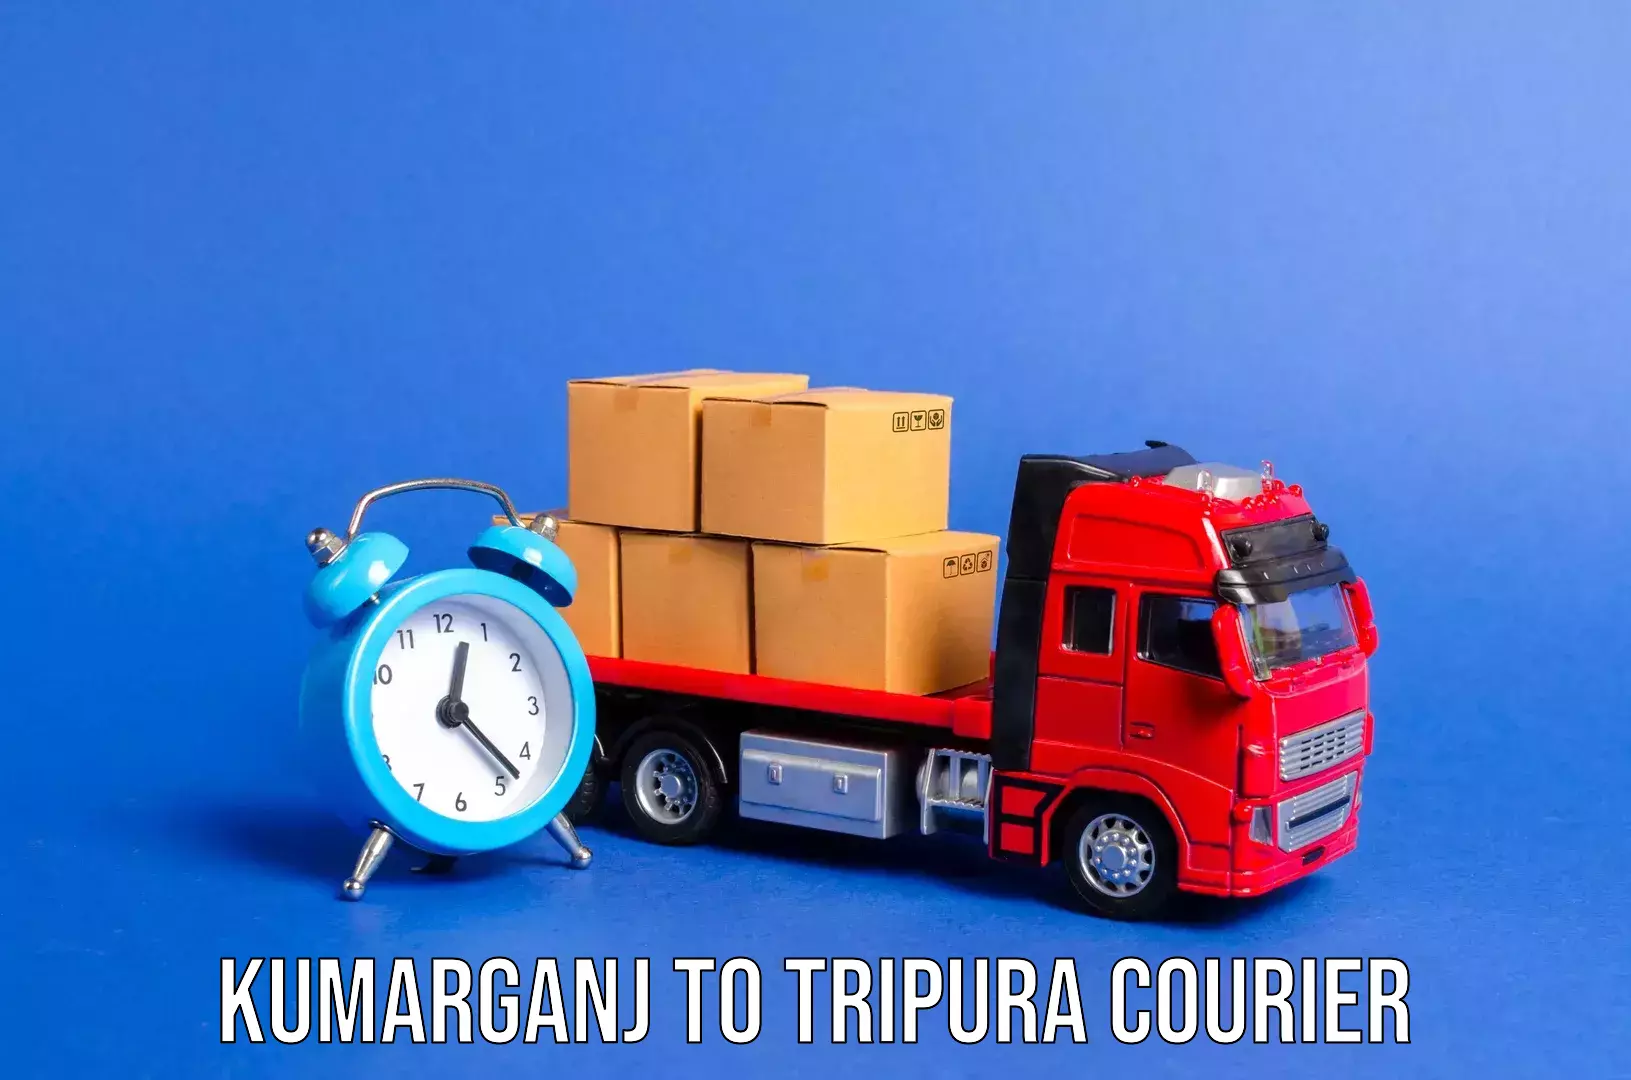 Luggage transit service Kumarganj to Ambassa